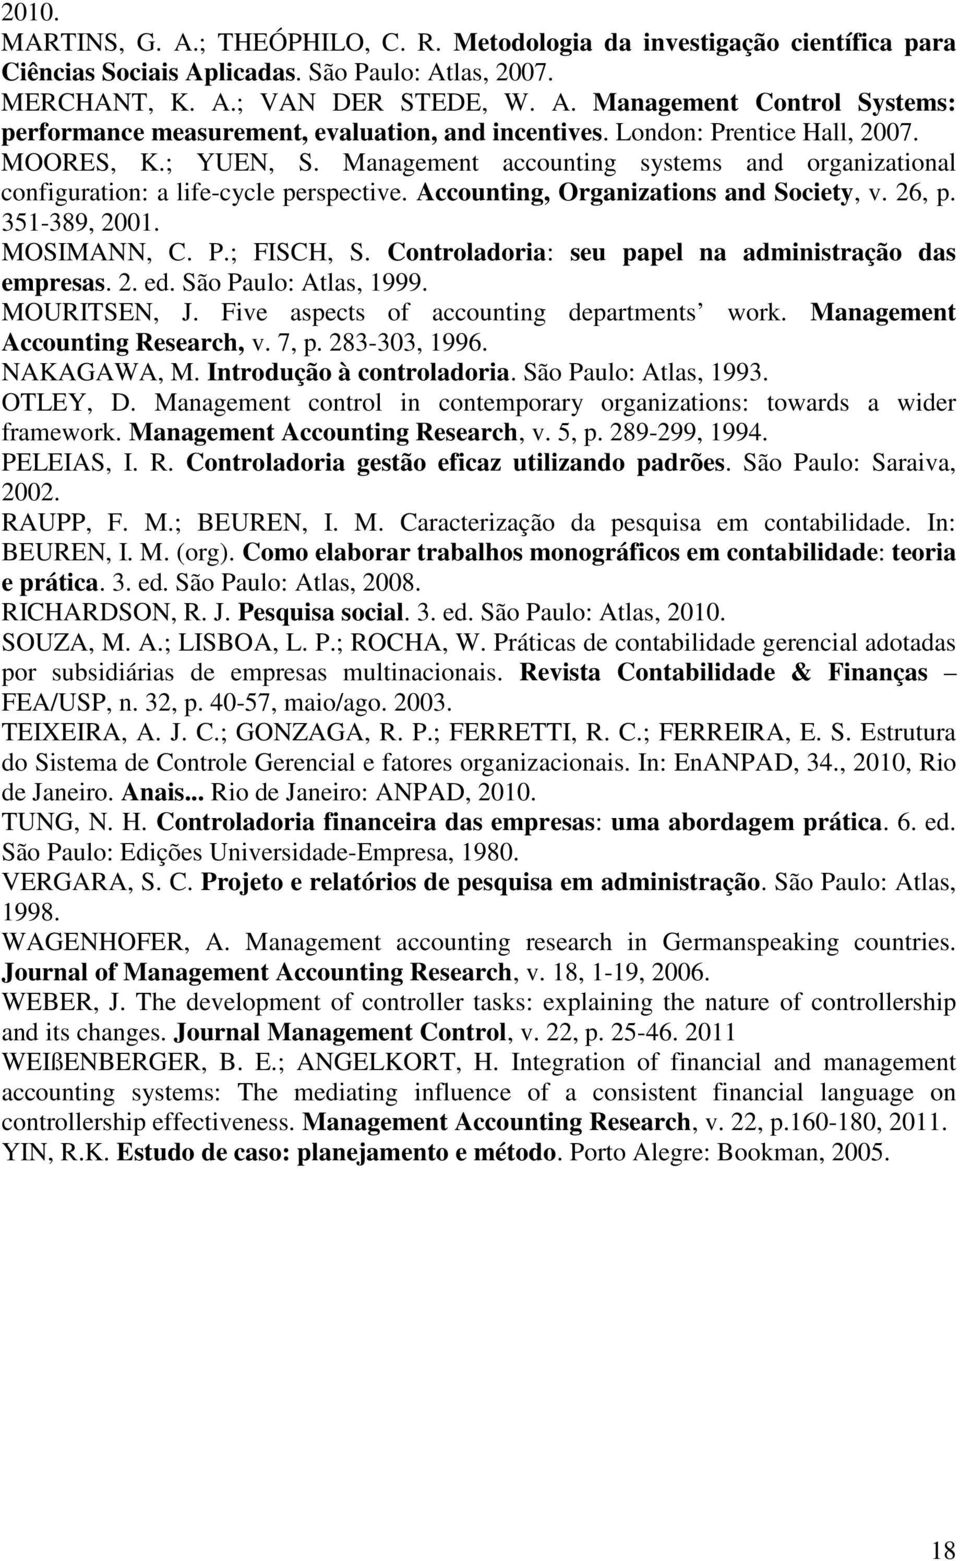 351-389, 2001. MOSIMANN, C. P.; FISCH, S. Controladoria: seu papel na administração das empresas. 2. ed. São Paulo: Atlas, 1999. MOURITSEN, J. Five aspects of accounting departments work.